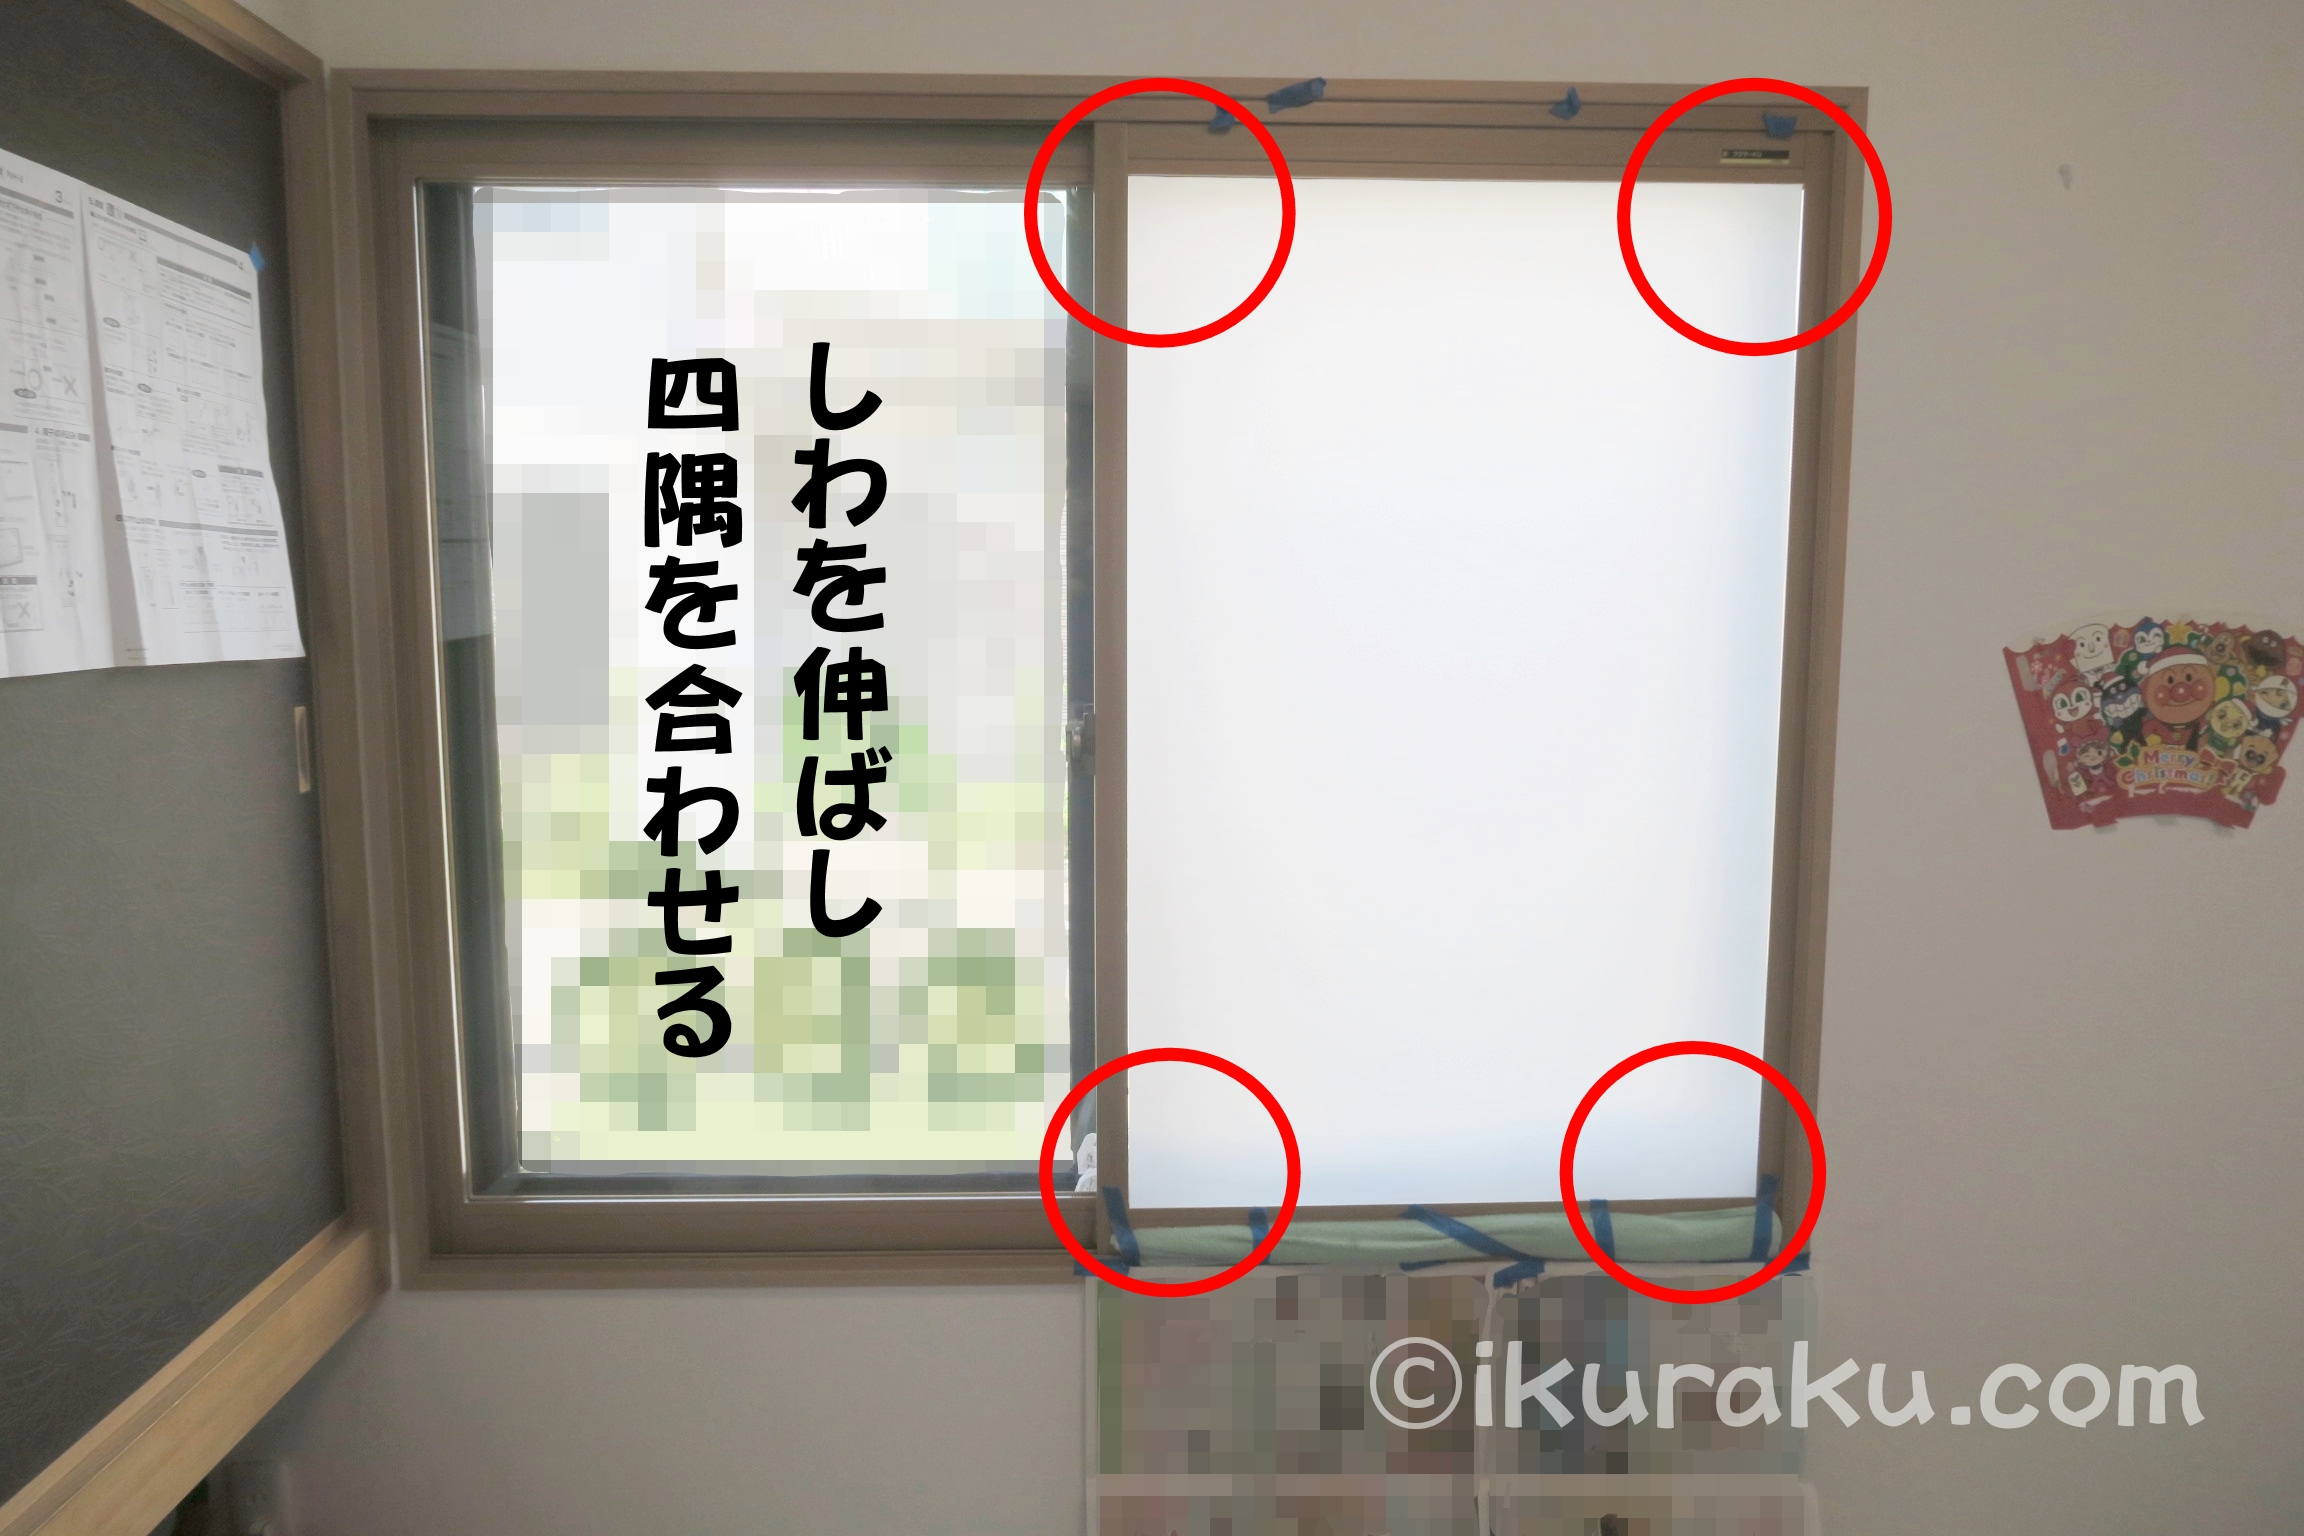 目隠しシートを窓に貼りつける際は、まずしわを伸ばして窓の四隅に合わせる